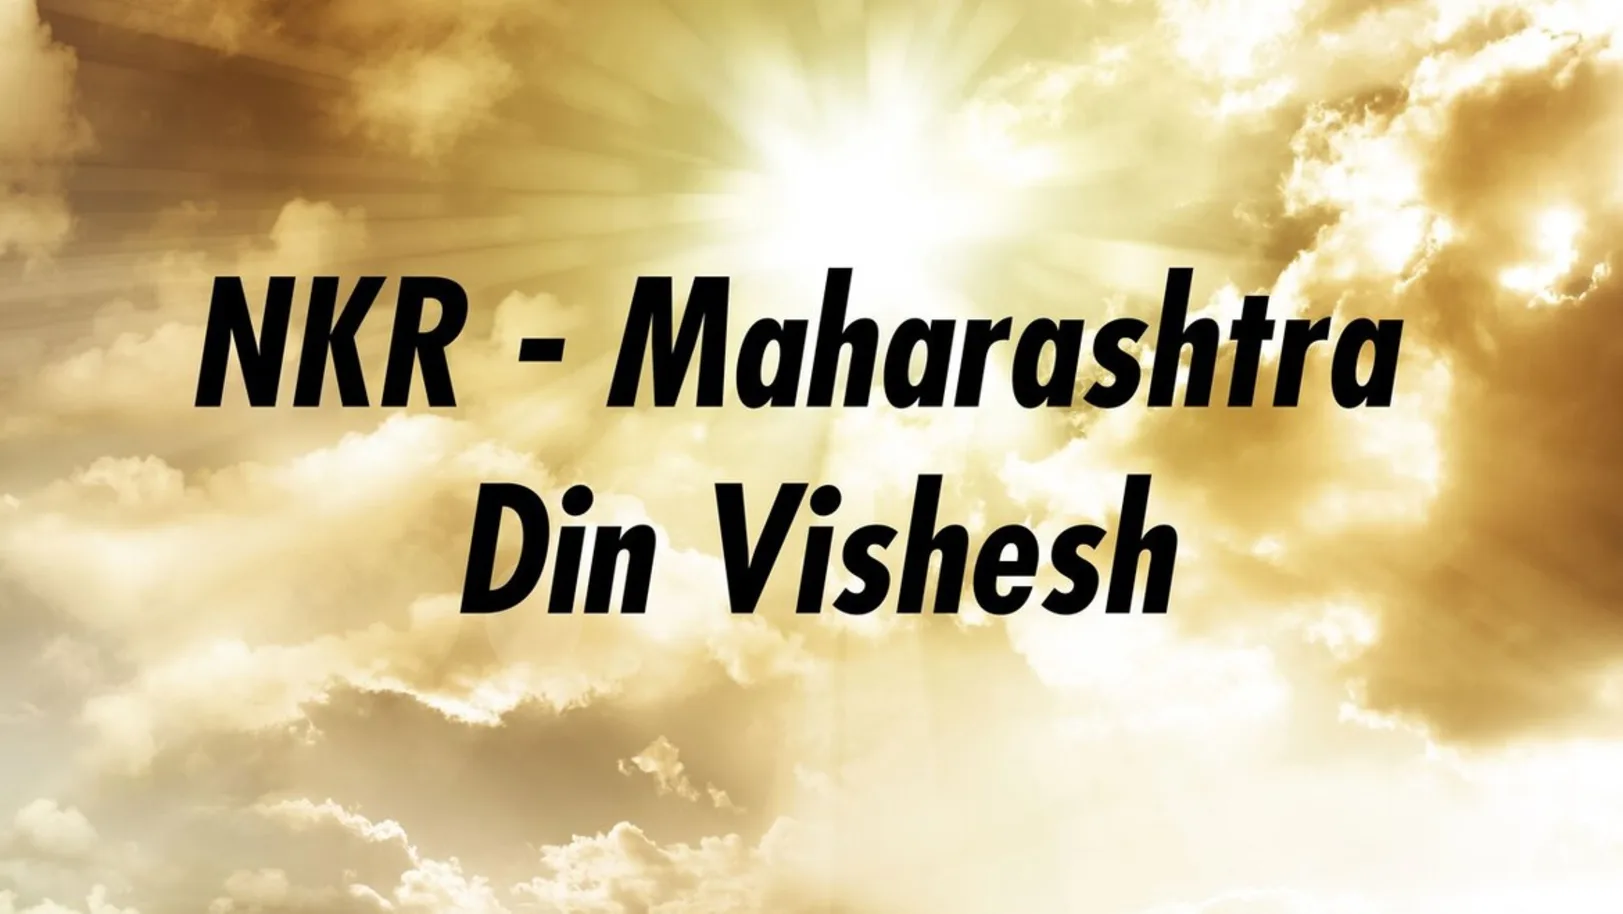 NKR - Maharashtra Din Vishesh Streaming Now On Zee Talkies